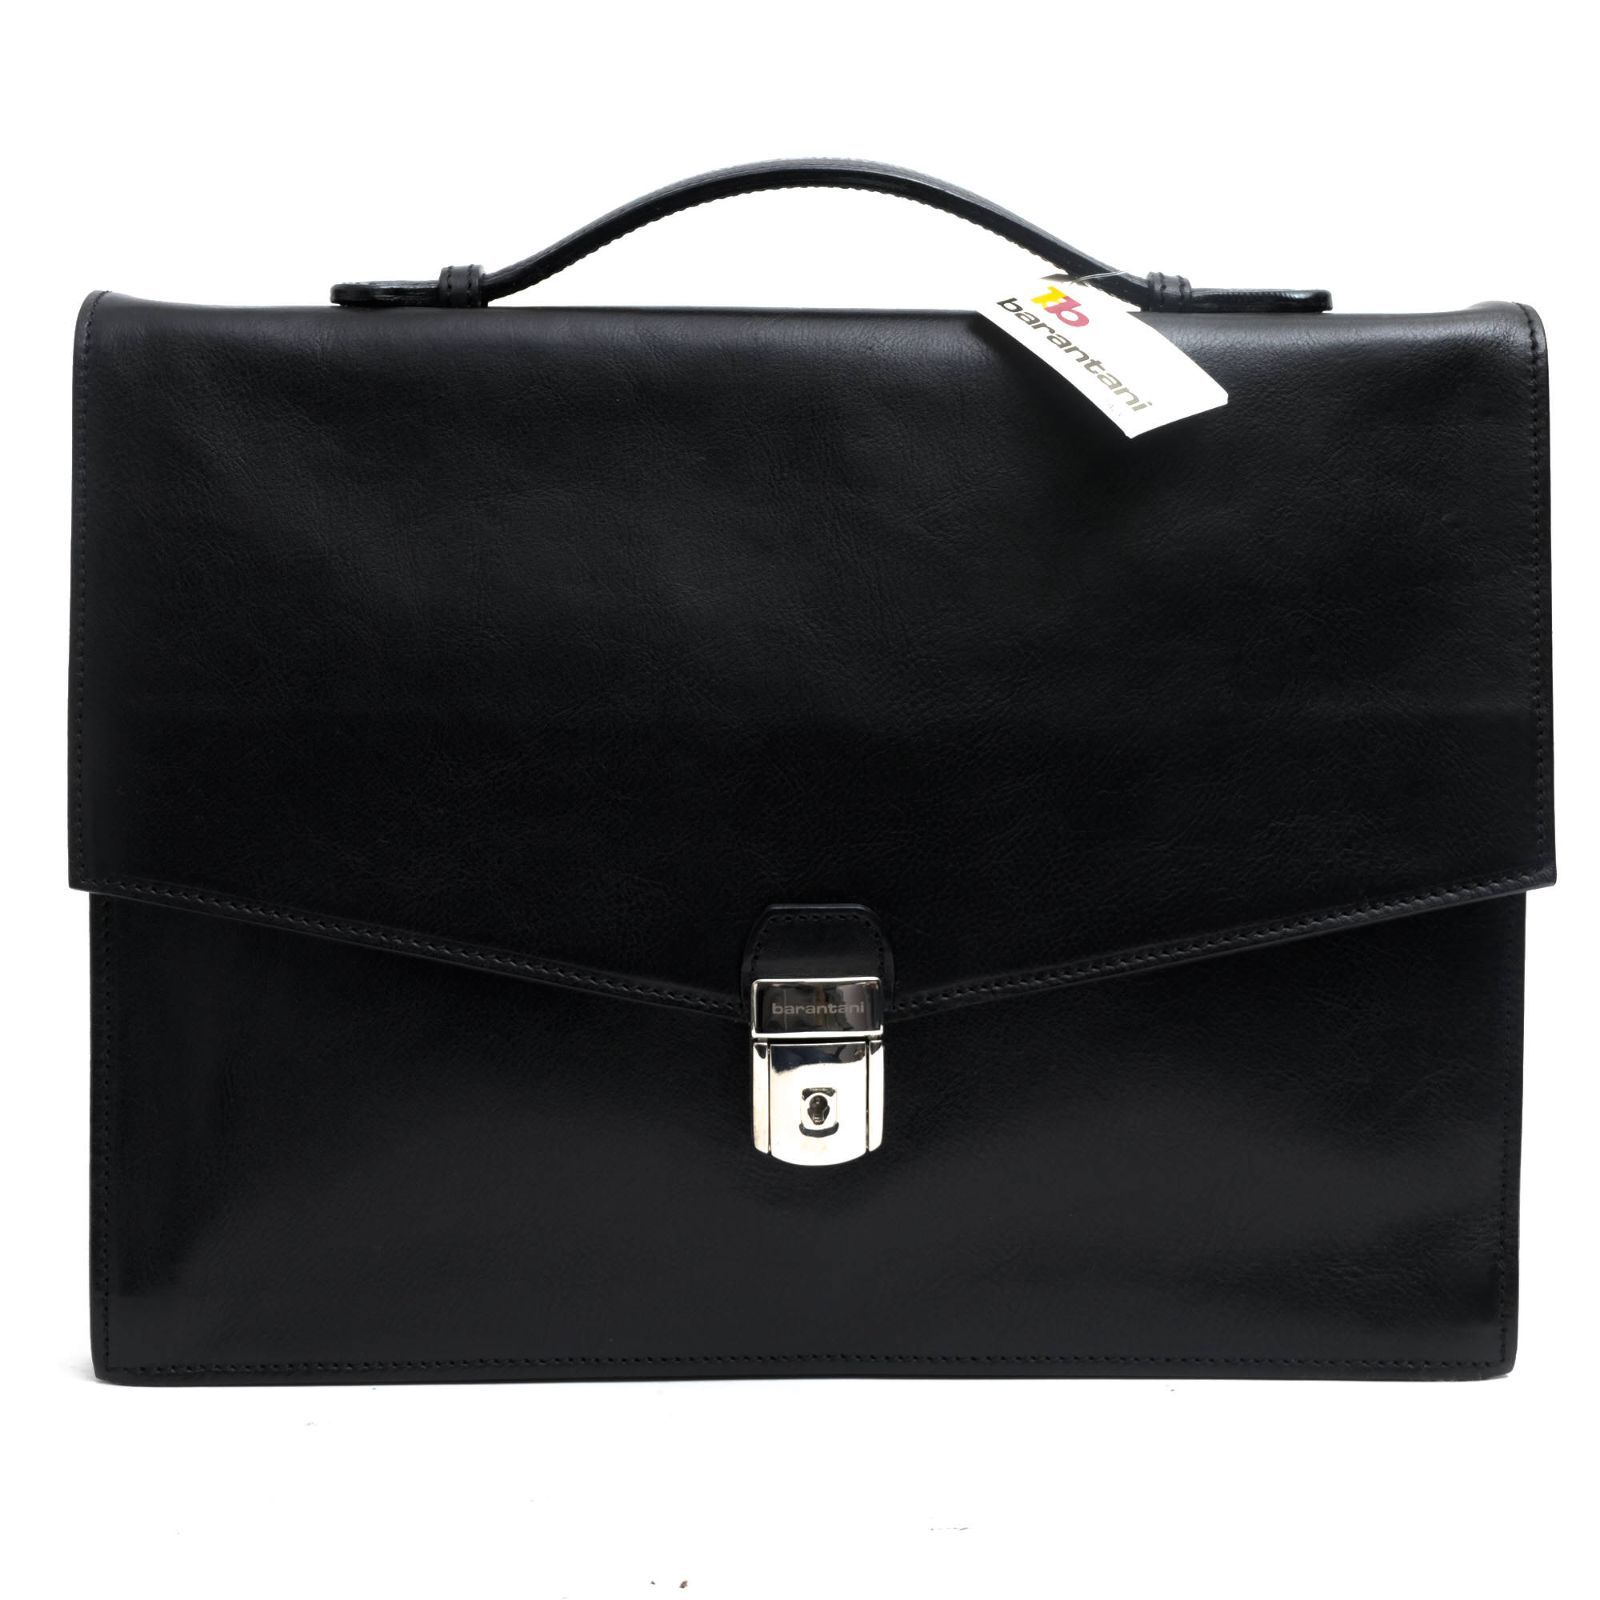 バランターニ／barantani バッグ ブリーフケース ビジネスバッグ 鞄 ビジネス メンズ 男性 男性用レザー 革 本革 ブラック 黒 20290